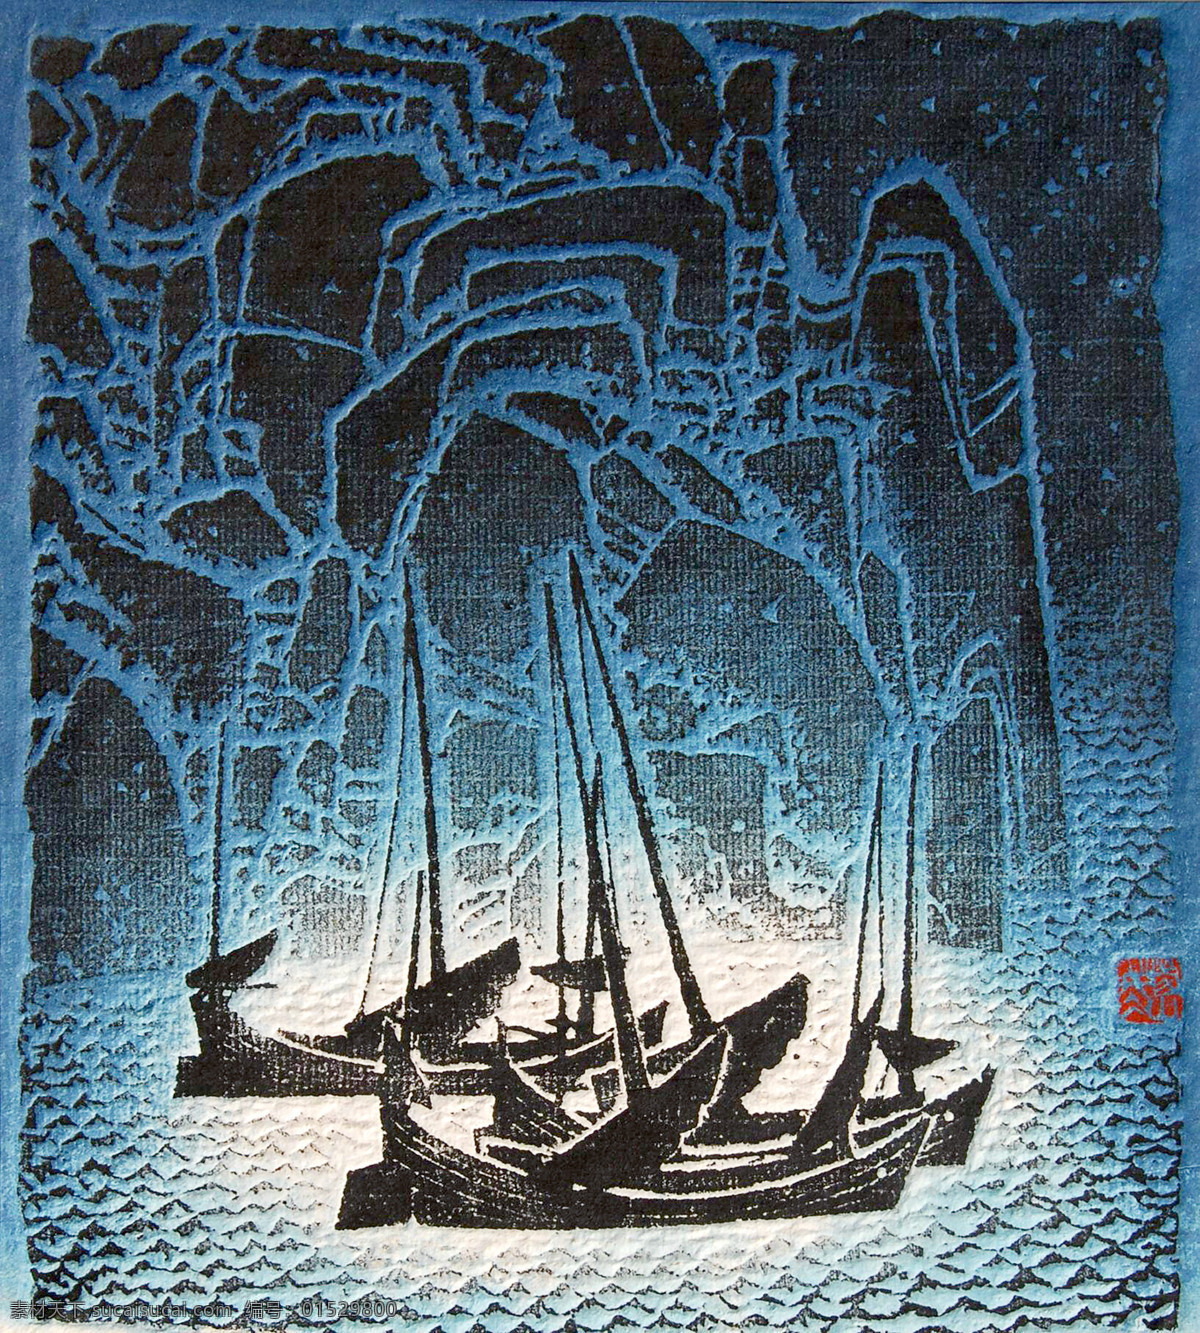 海岛船歌 美术 绘画 版画 风景 大海 海岛 渔船 礁石 版画艺术 版画作品2 绘画书法 文化艺术